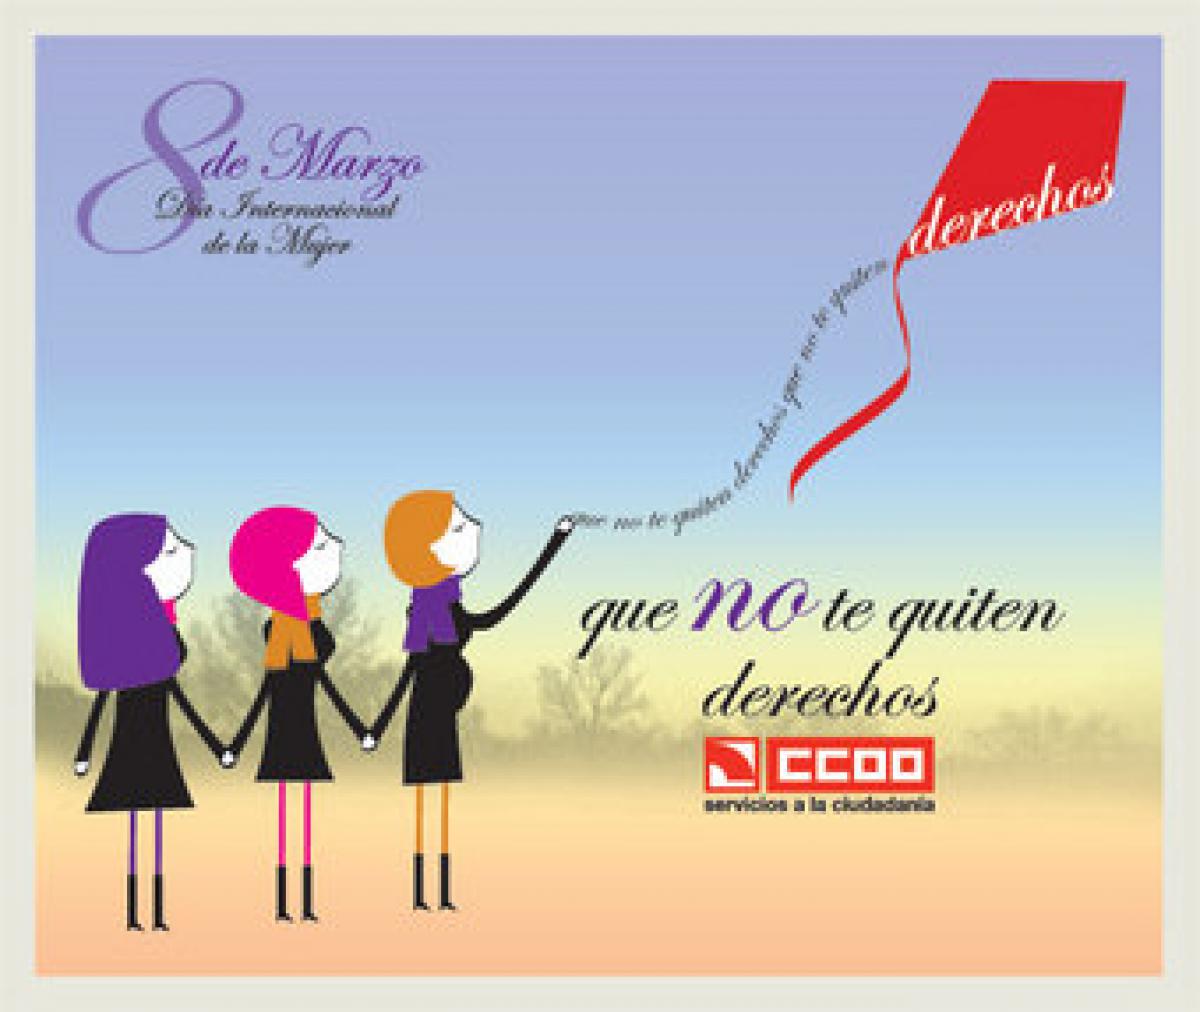 Cartel del 8 de marzo, día internacional de la mujer